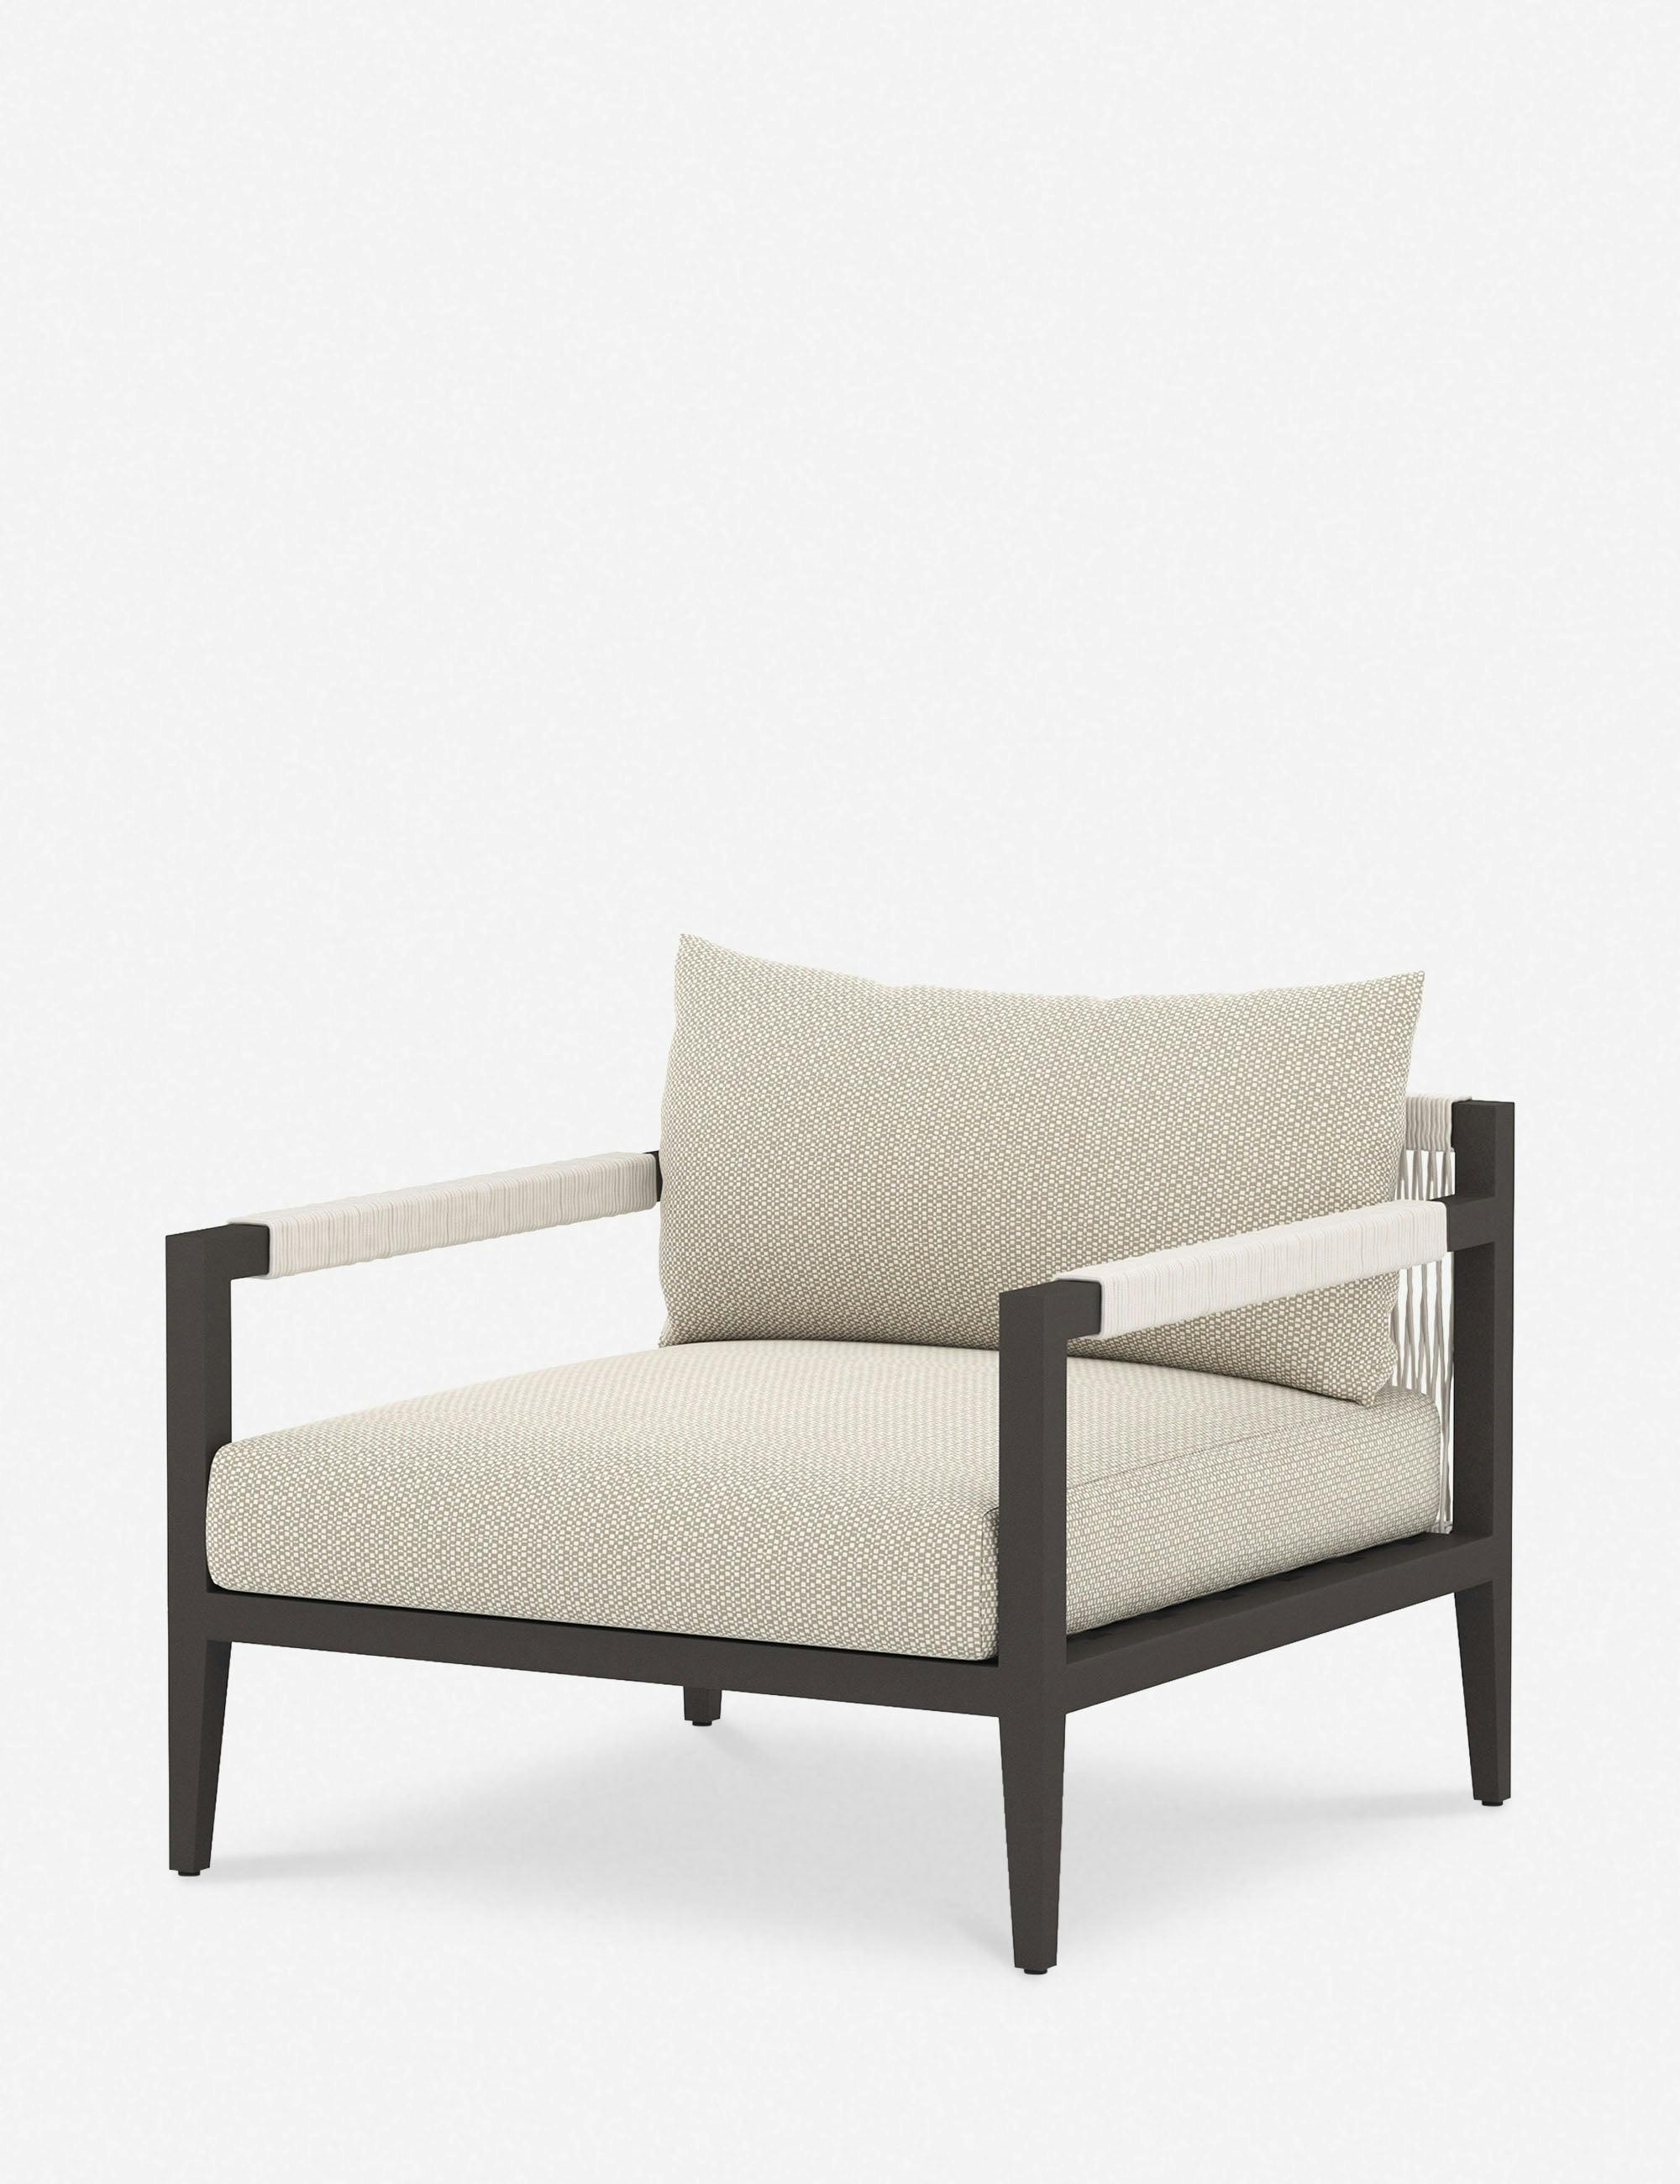 Cadenza Indoor / Outdoor Accent Chair - Bronze/Sand